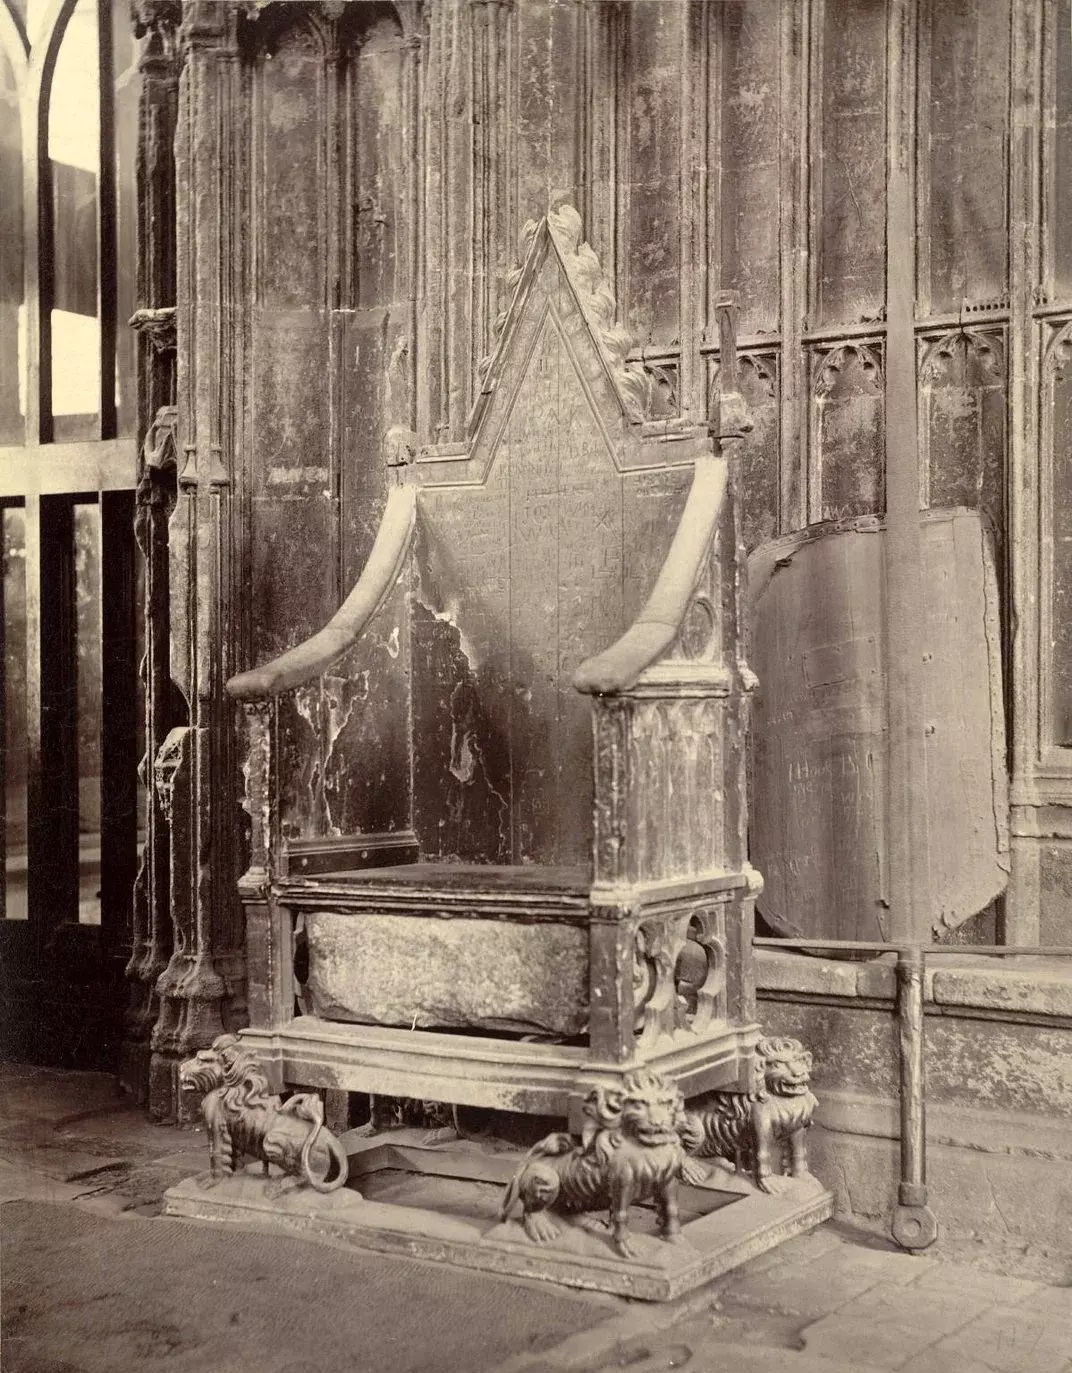 Μια φωτογραφία του θρόνου από τα τέλη του 19ου αιώνα, με την Πέτρα του Σκόουν, ορατή κάτω από το κάθισμα